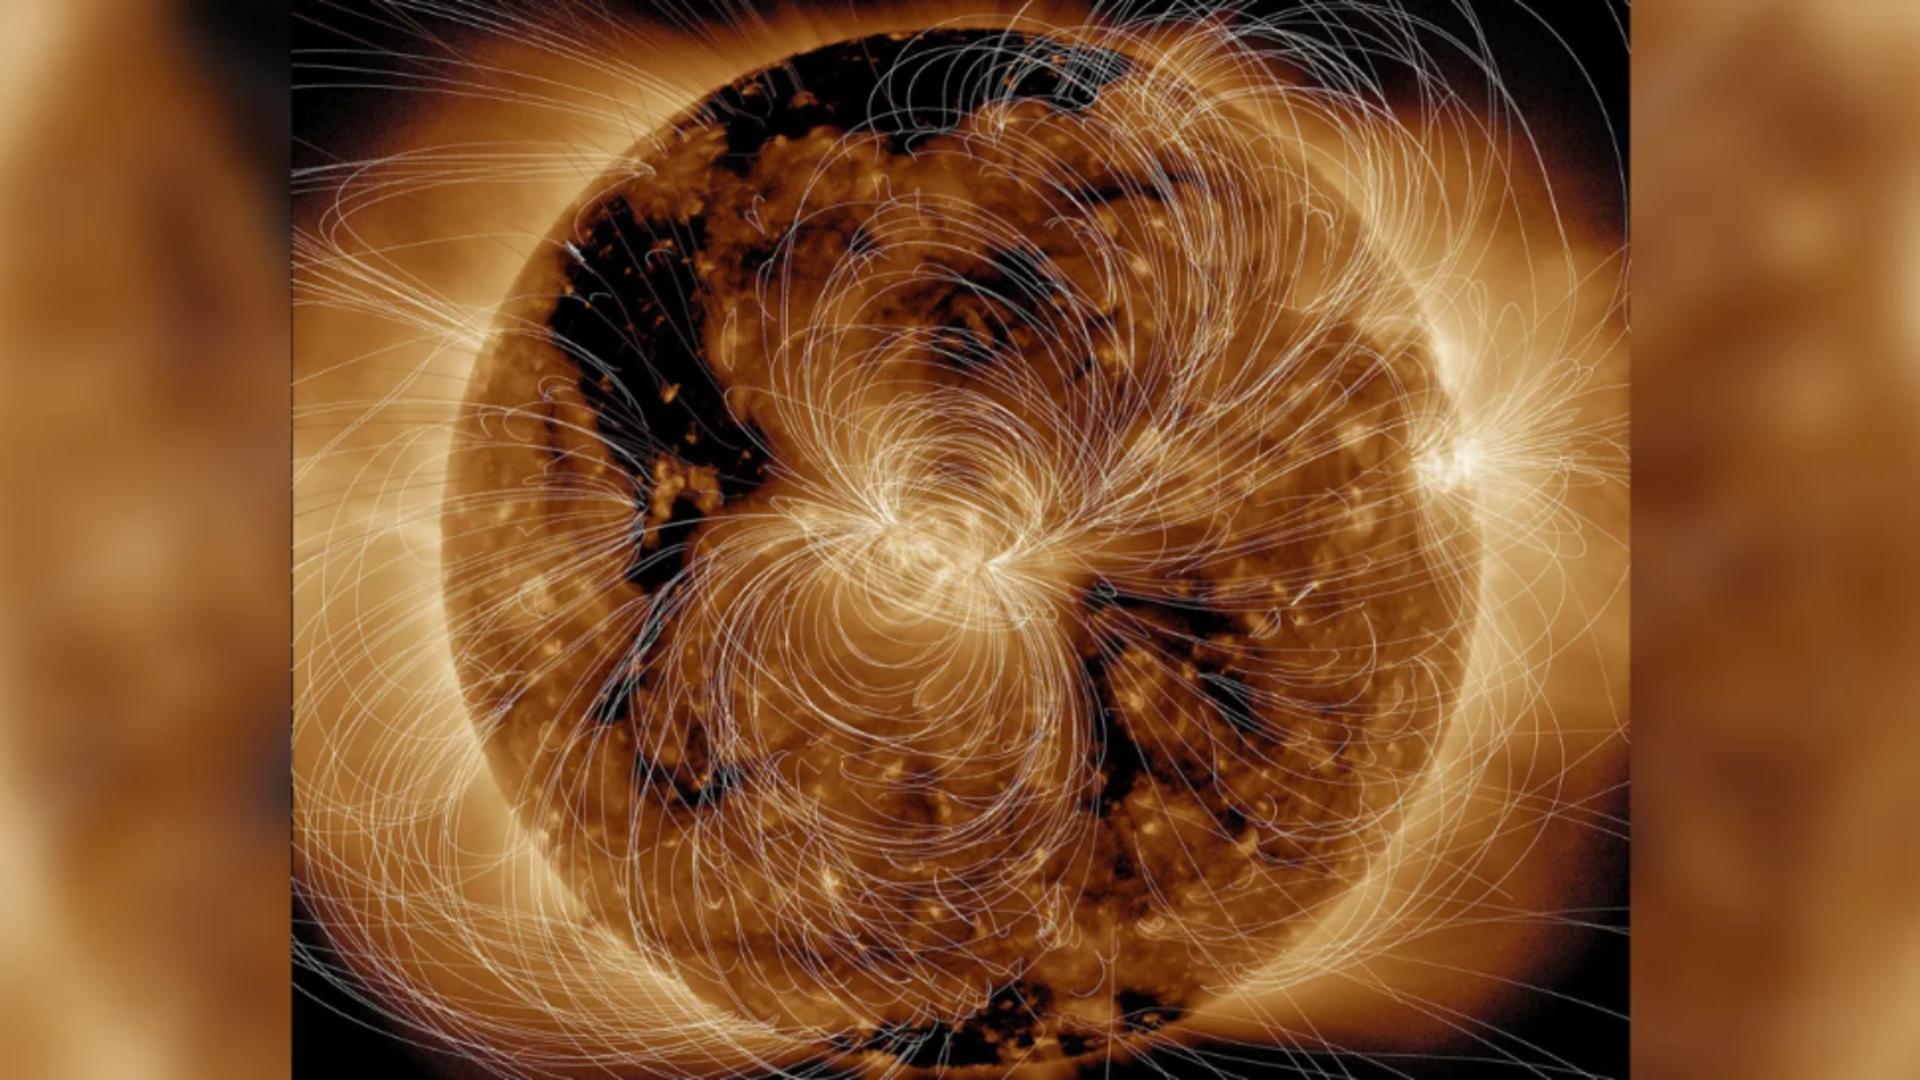 Soarele atinge apogeul mai repede: O furtună geomagnetică va devasta totul – Blackout global în 2024-2026, fără curent și internet